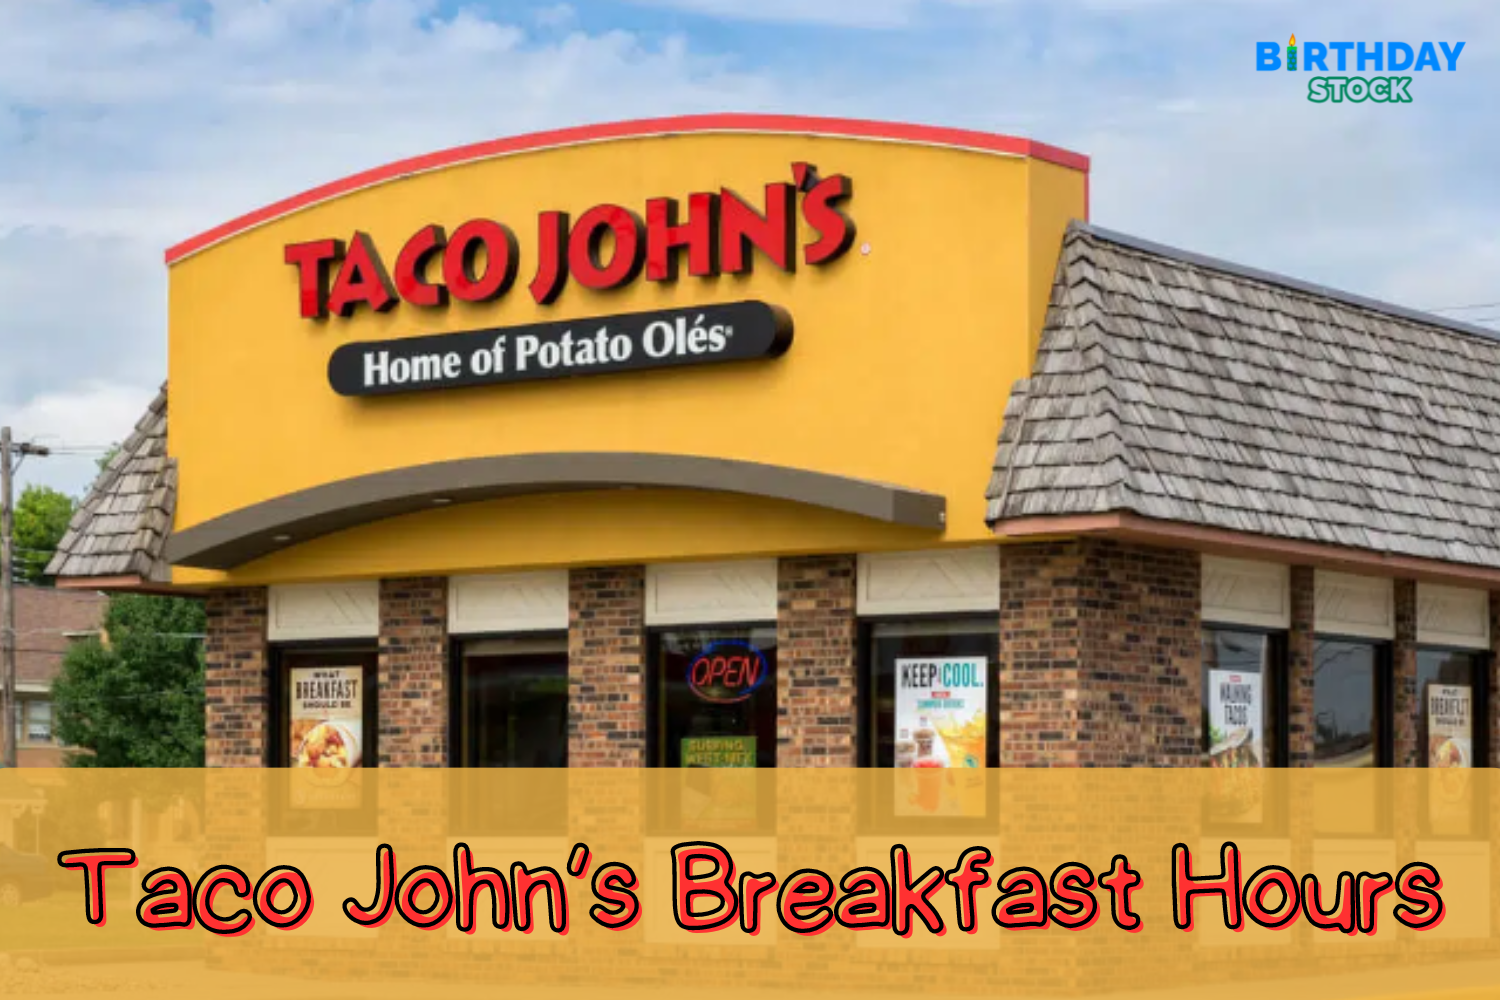 Taco John’s Breakfast Hours When Does It Stop Serving Breakfast